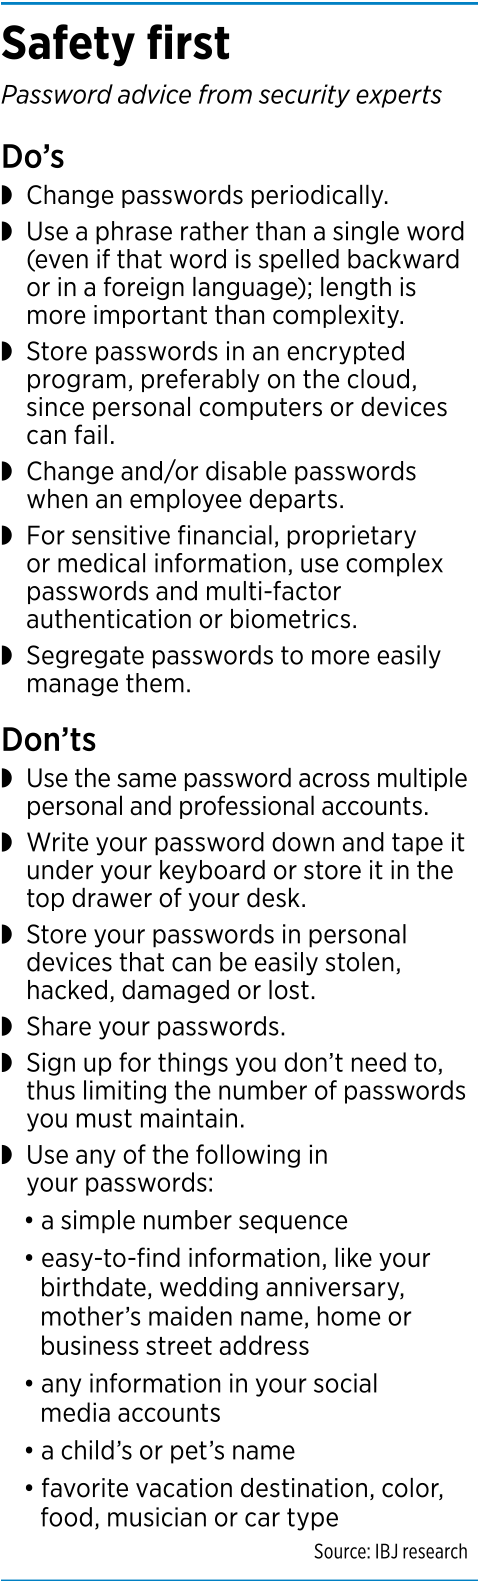 focus-passwords-factbox1.png